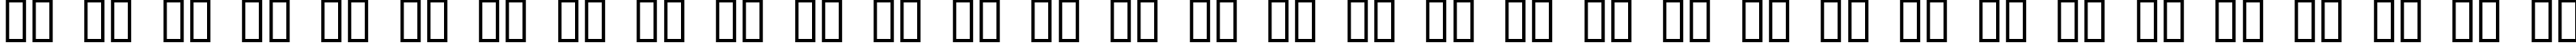 Пример написания русского алфавита шрифтом Antique